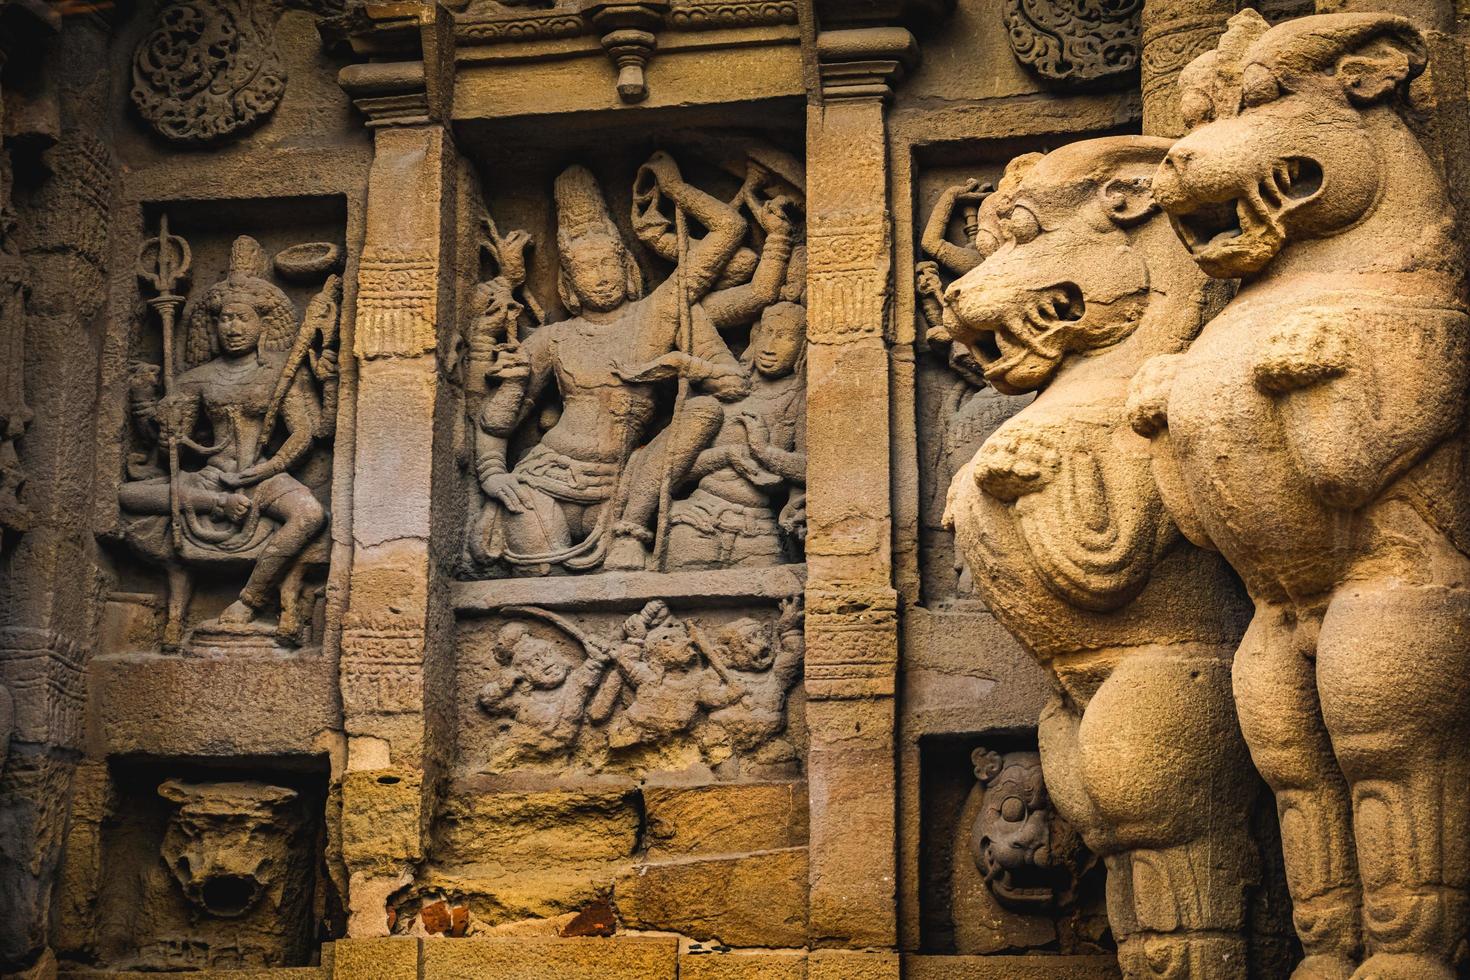 belle architecture pallava et sculptures exclusives au temple de kanchipuram kailasanathar, le plus ancien temple hindou de kanchipuram, tamil nadu - meilleurs sites archéologiques du sud de l'inde photo